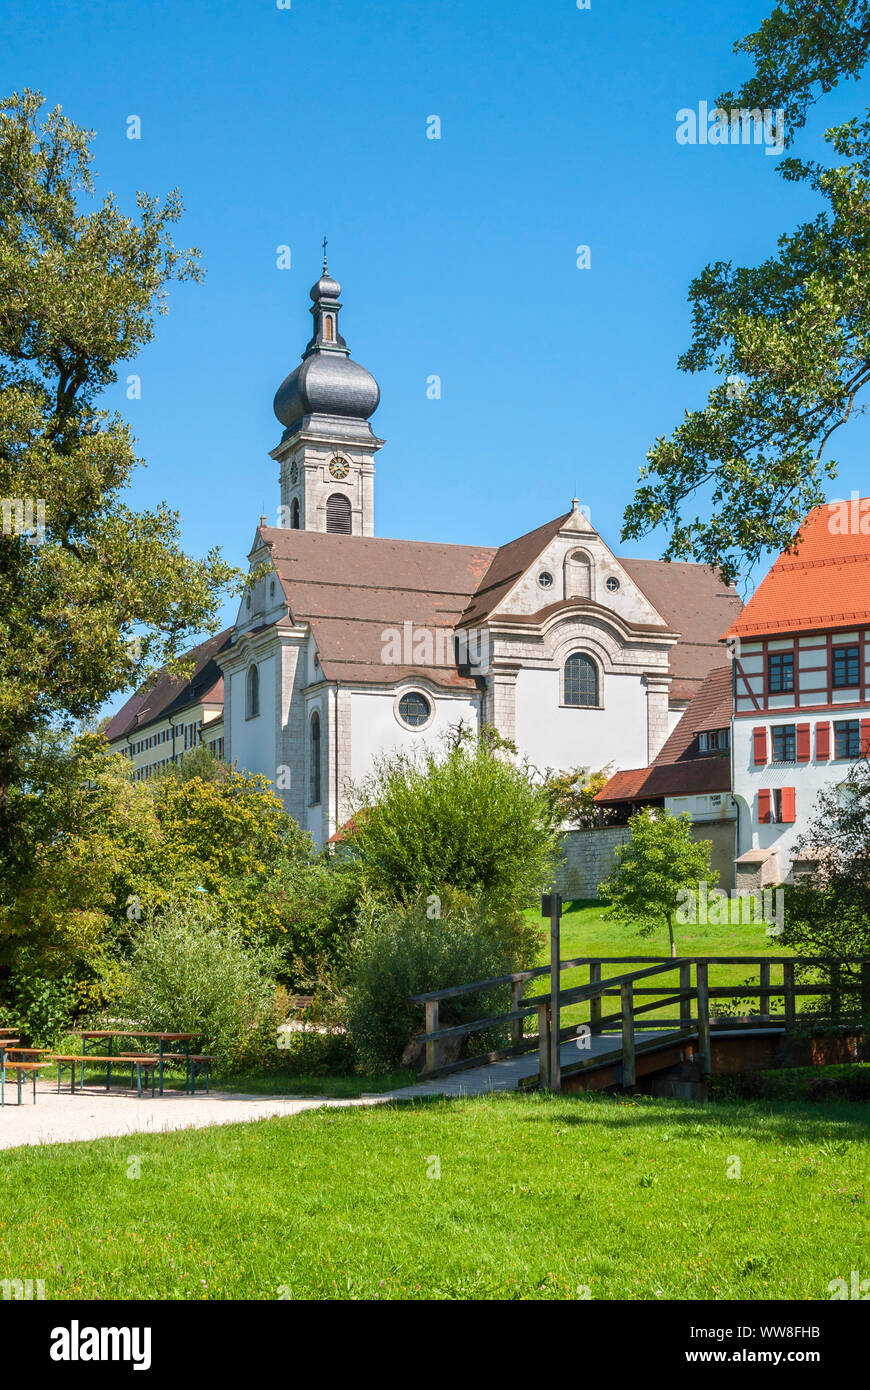 Allemagne, Baden-WÃ¼rttemberg, Ehingen, Sacré-Cœur de Jésus, l'église église Konvikt, Groggensee Park, passerelle sur la Schmiech Banque D'Images